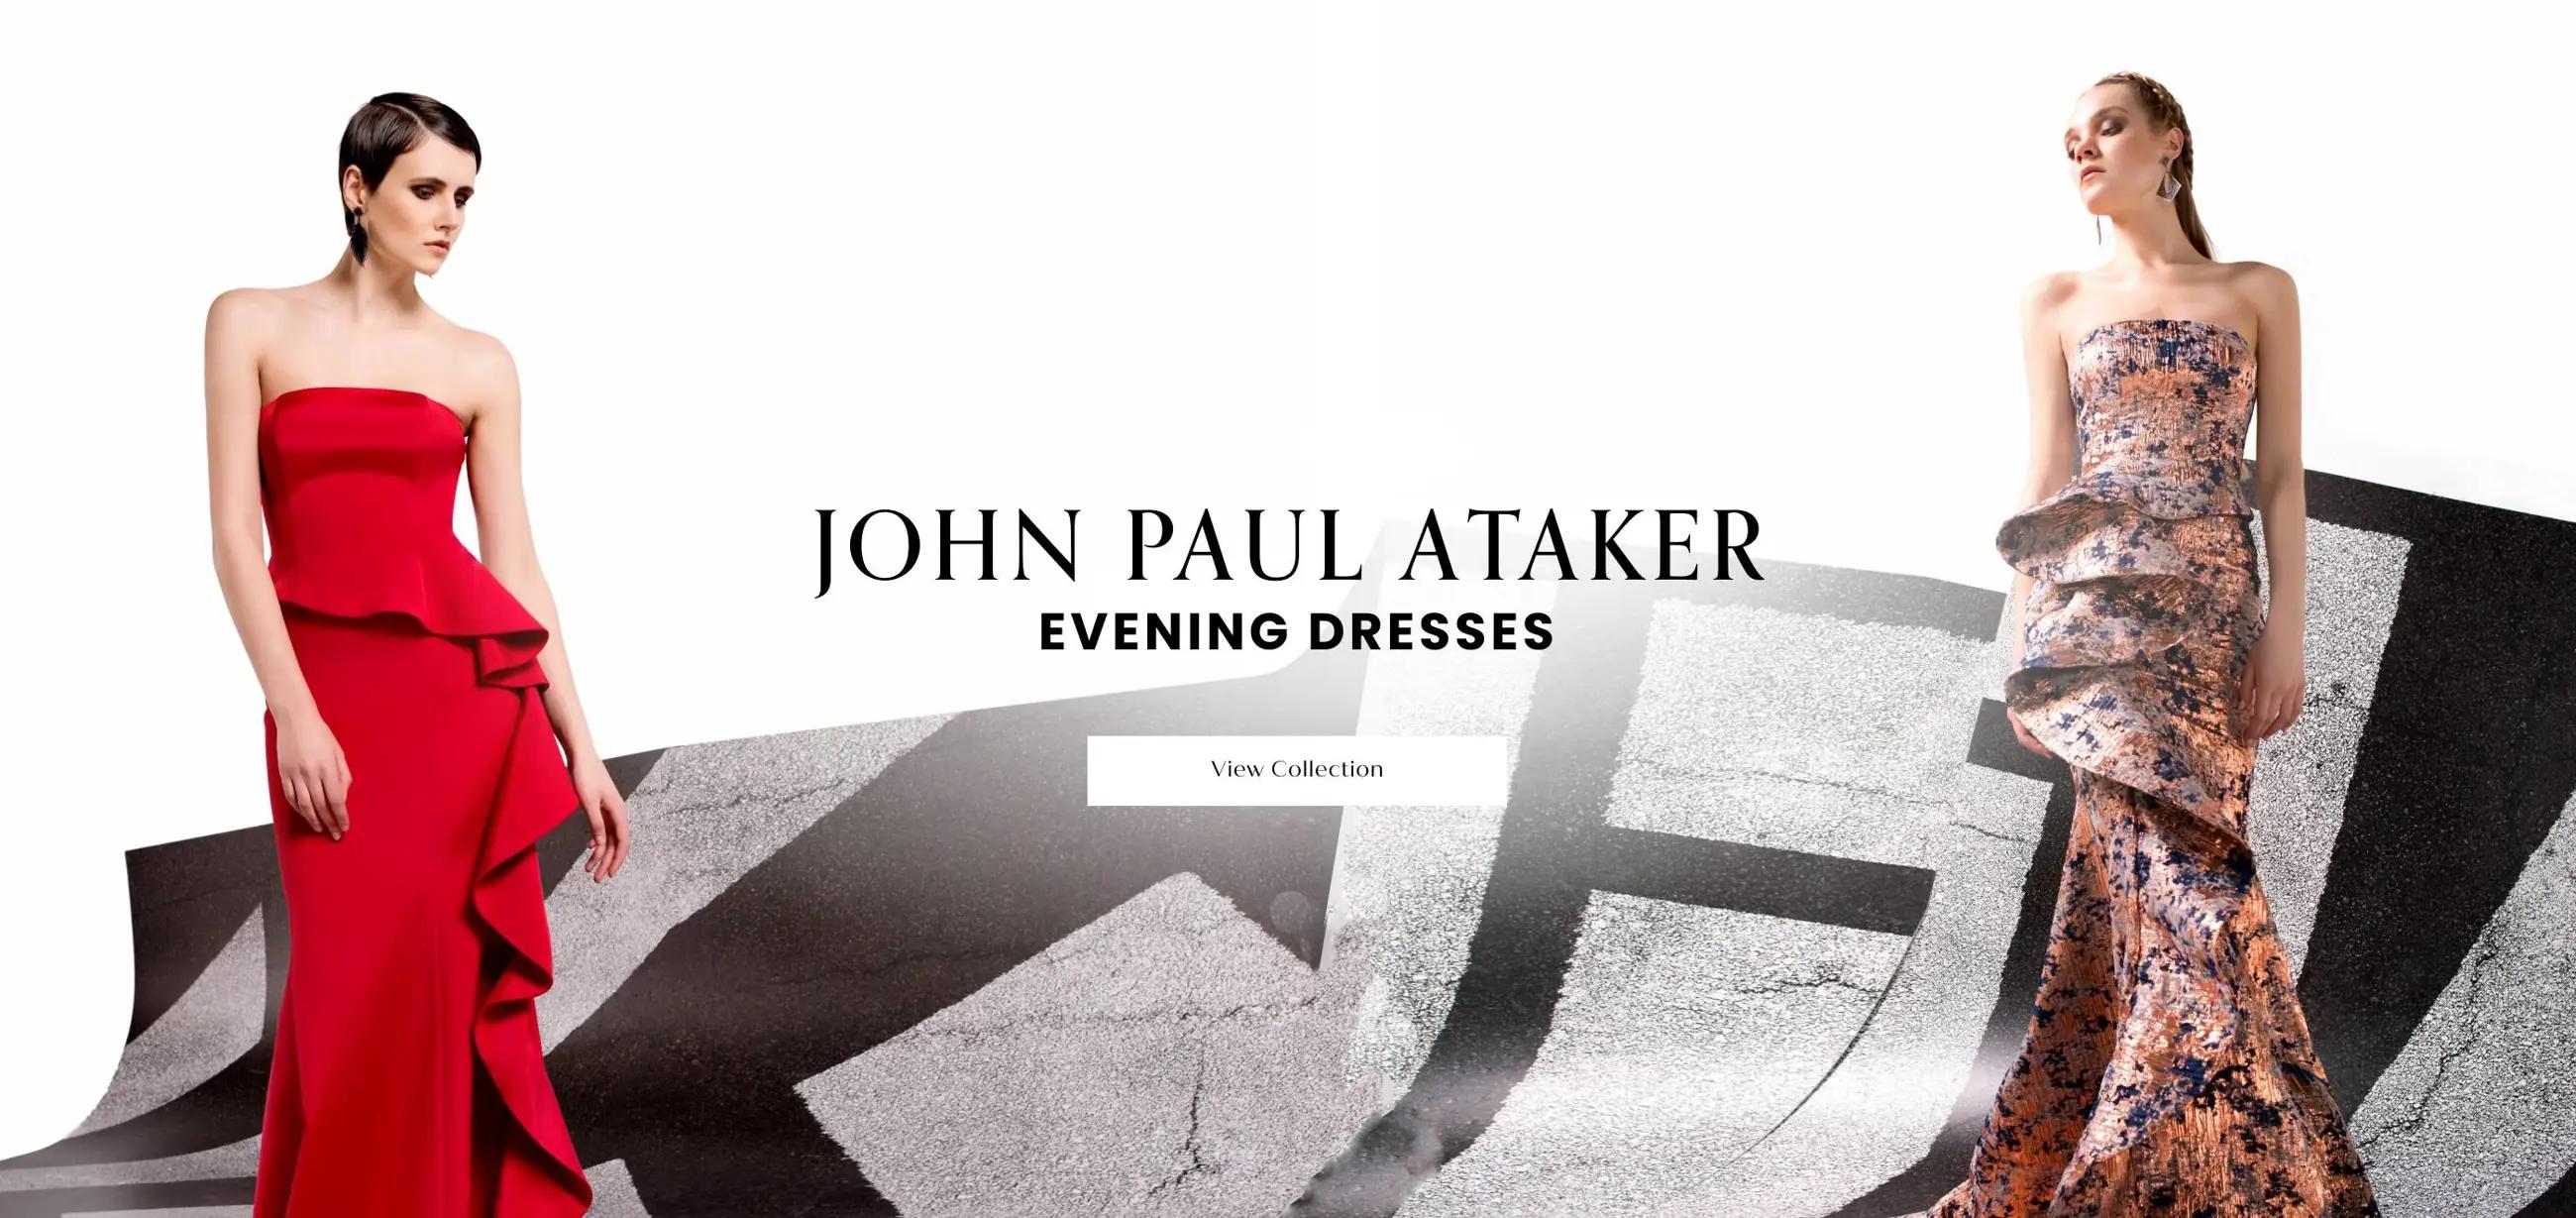 John Paul Ataker Desktop